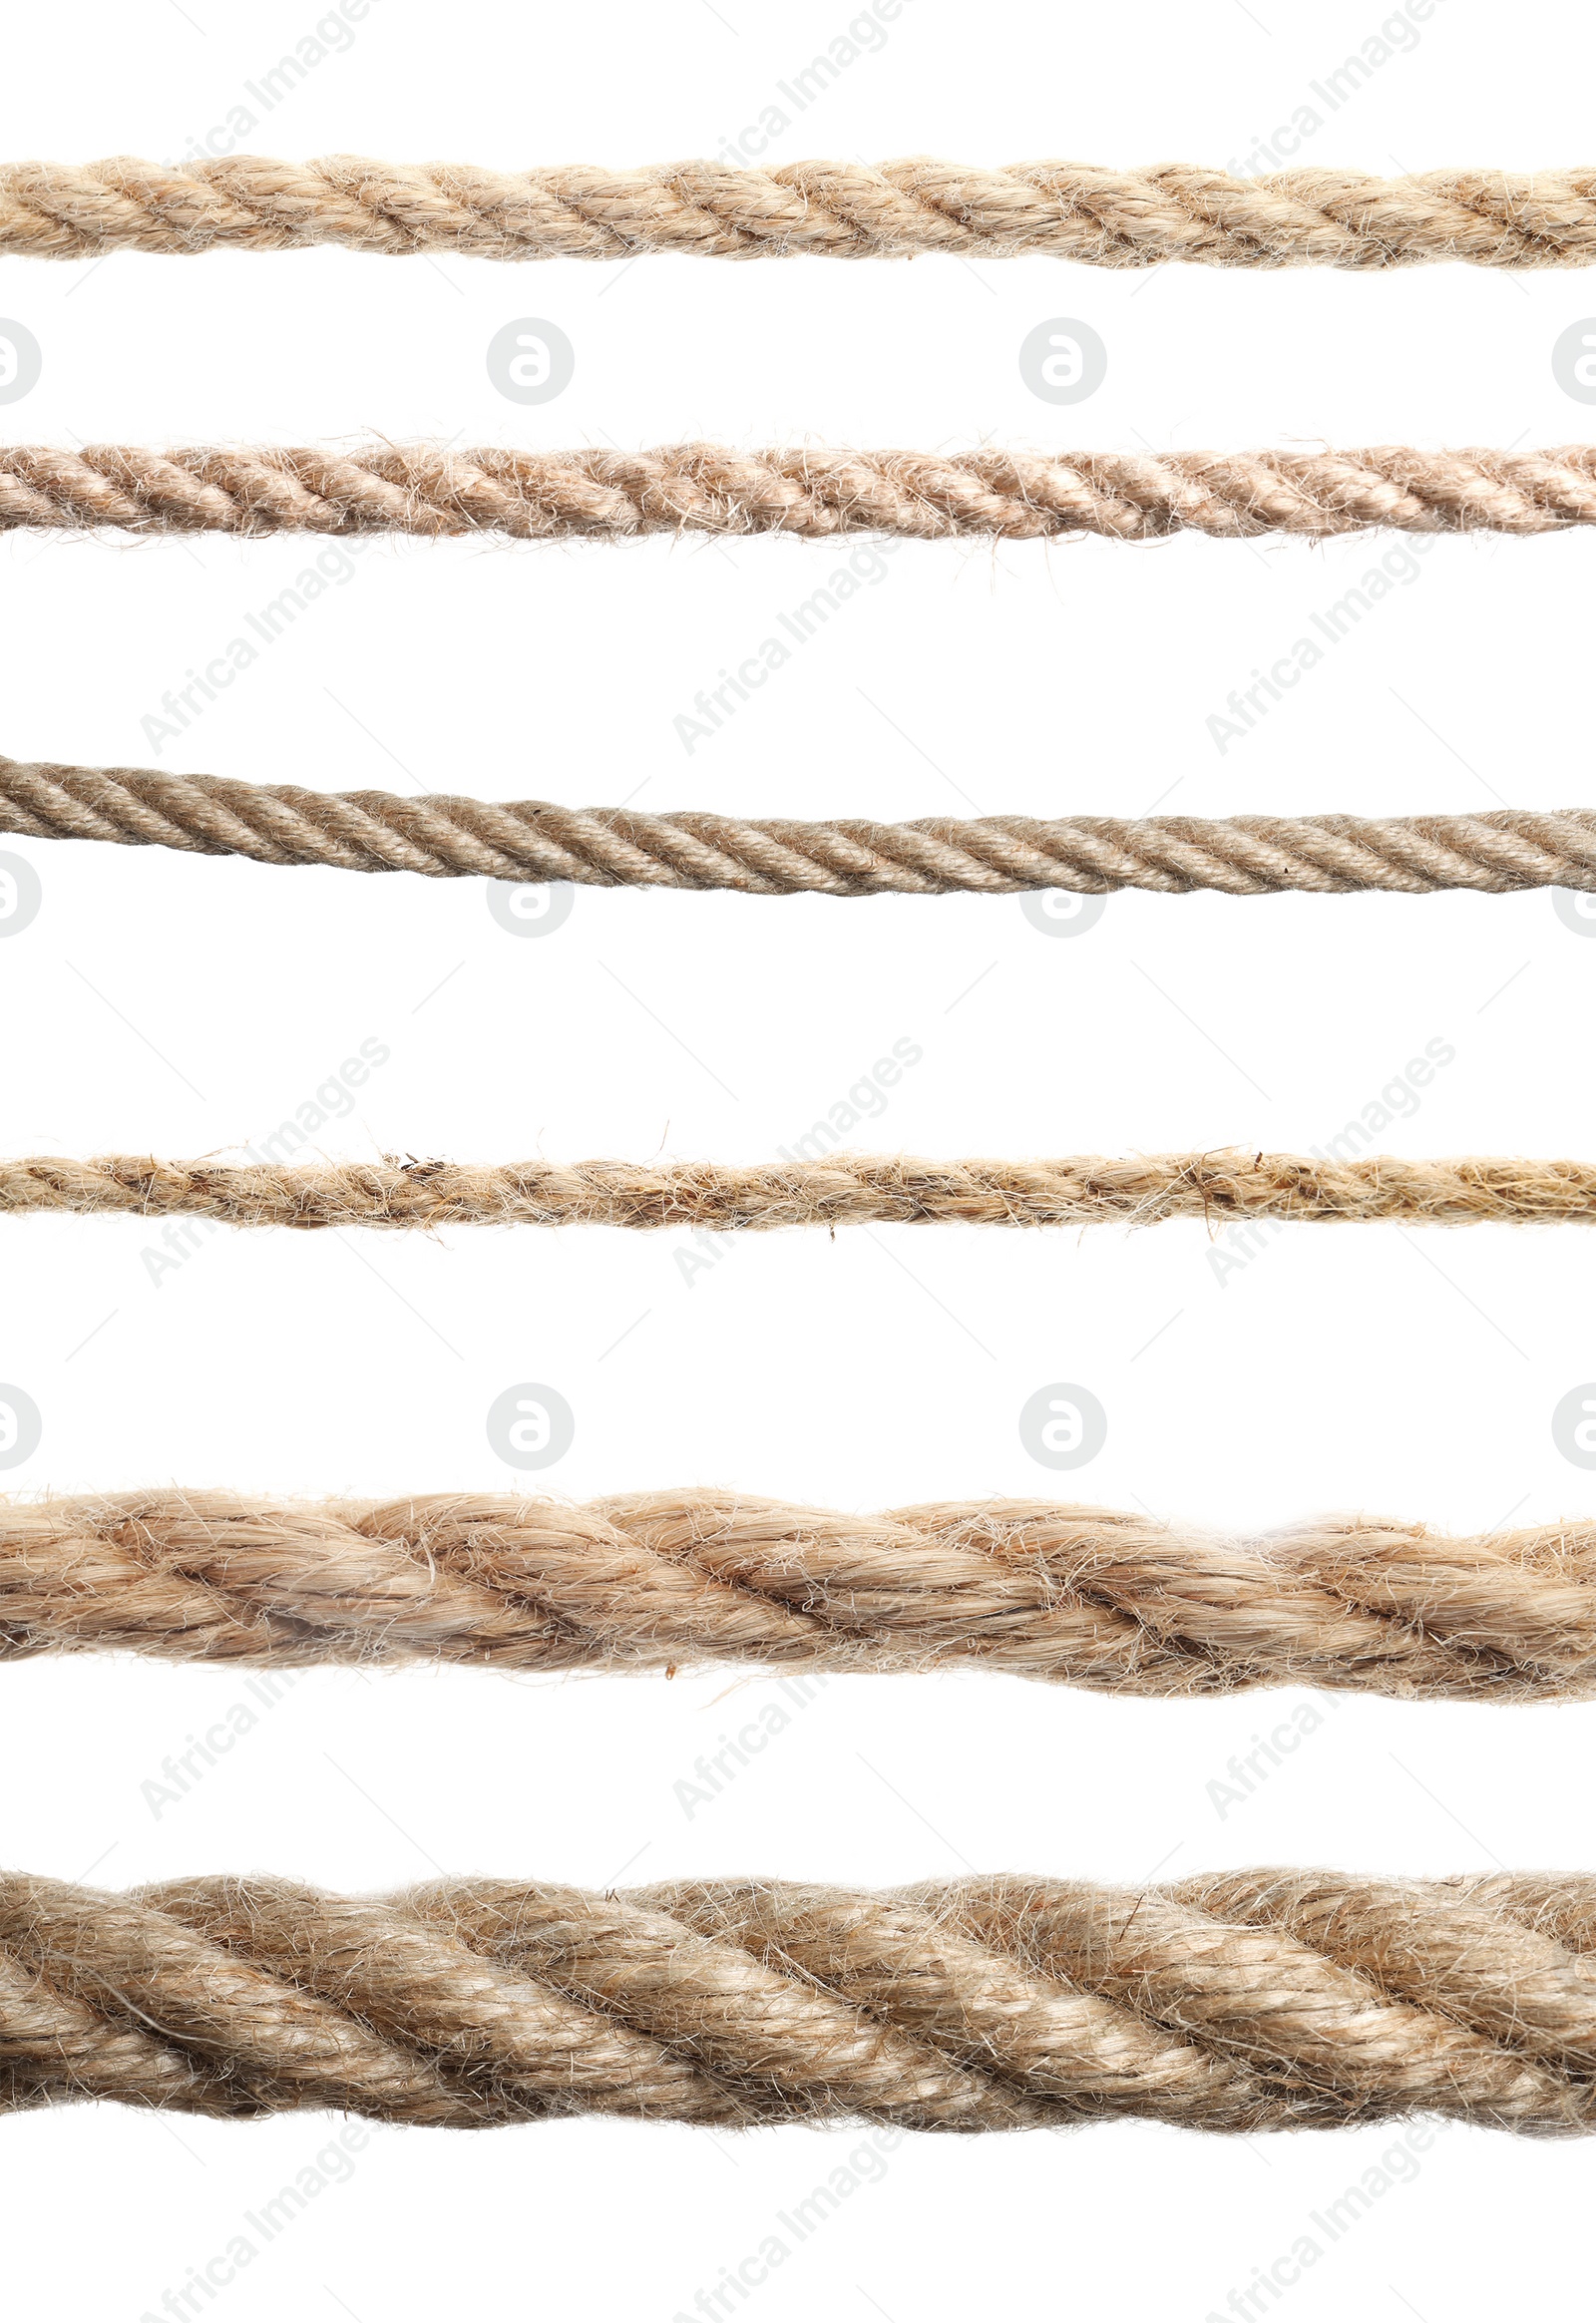 Image of Set of hemp ropes on white background